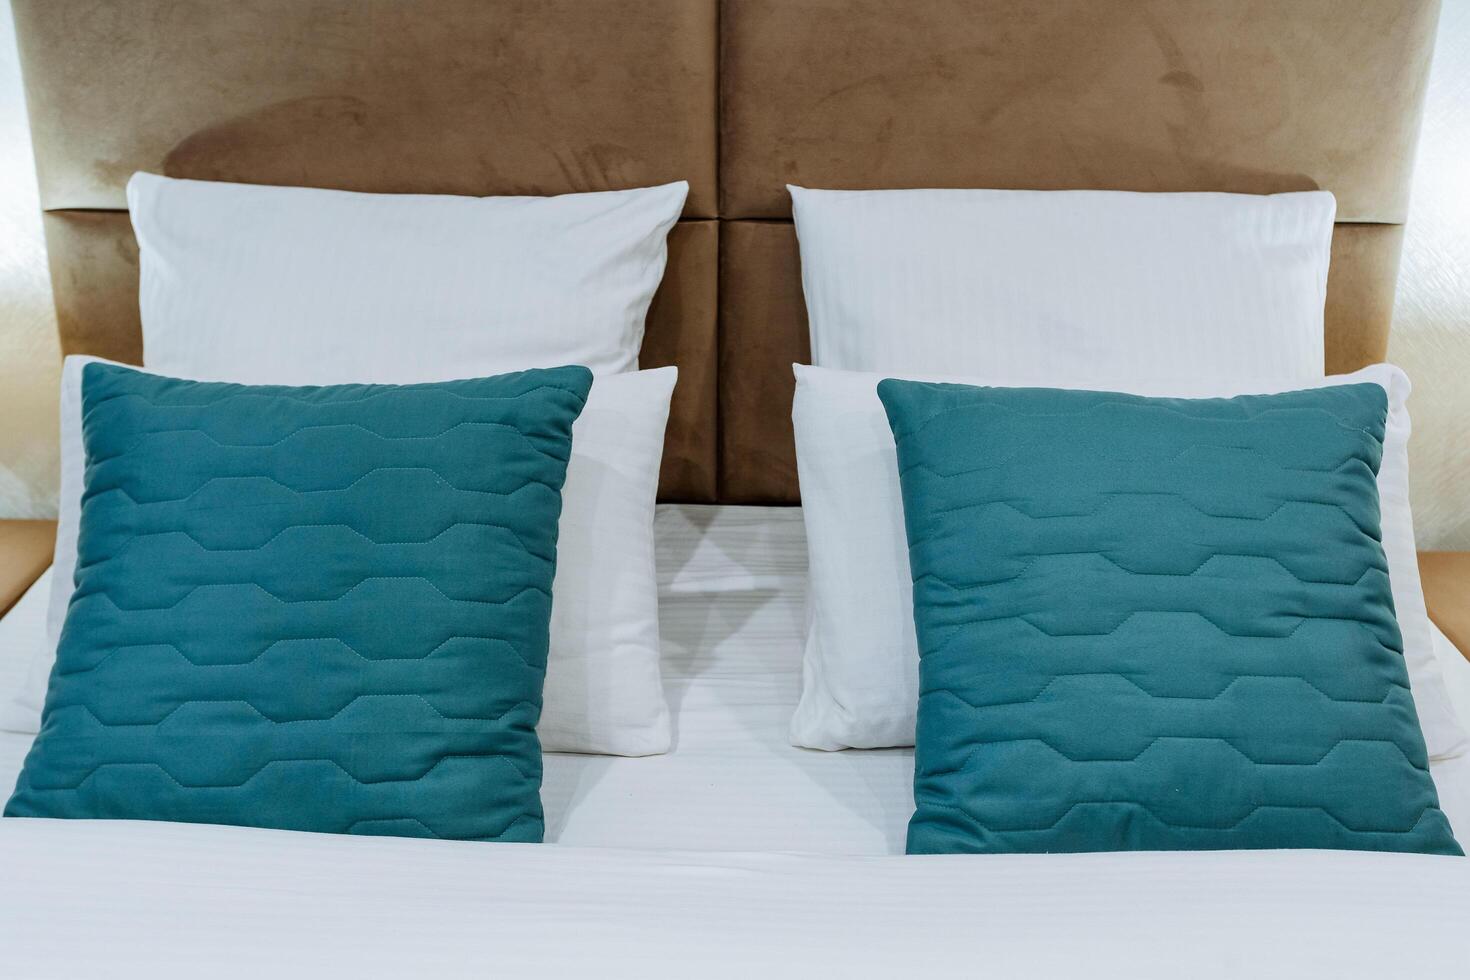 de hoofd van de bed, een reeks van kussens in de slaapkamer, blauw kussens, wit bed linnen, kussenslopen van verschillend kleuren, een hotel kamer, avond verlichting in de kamer. foto